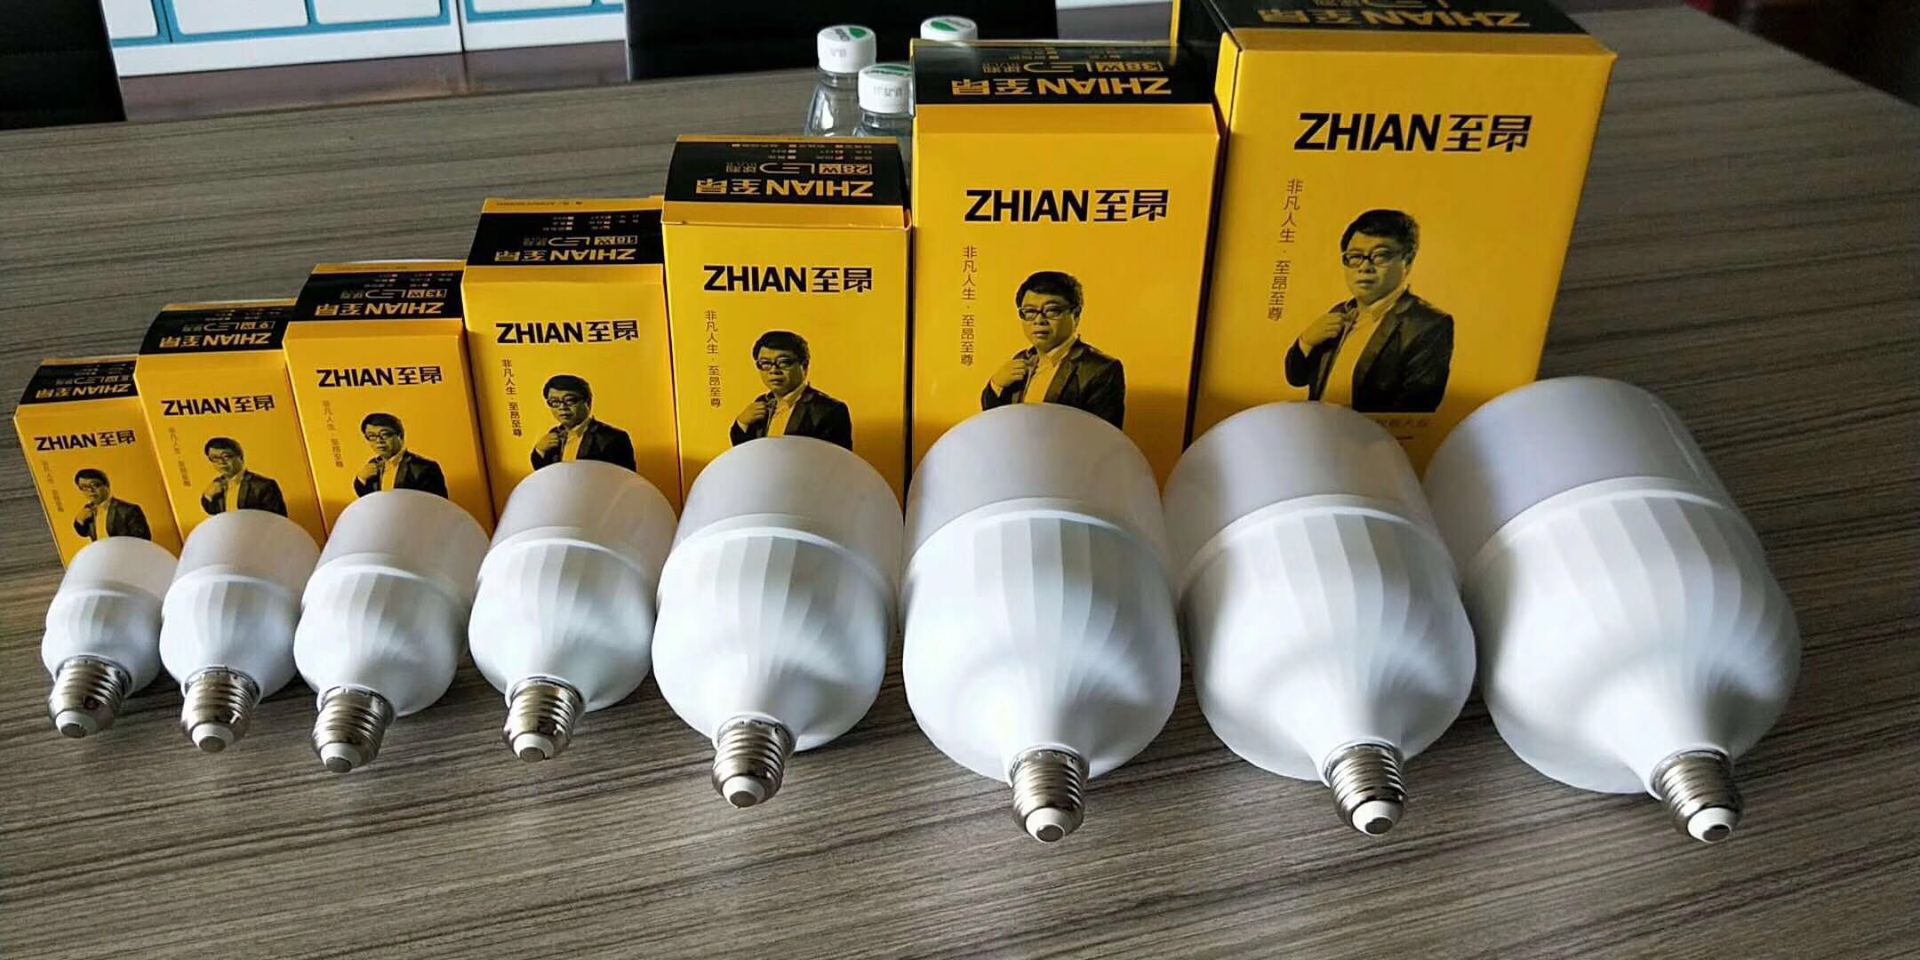 高品质上海至昂牌高泡LED球泡塑扣铝恒流驱动柱泡18W,28W赚钱利器